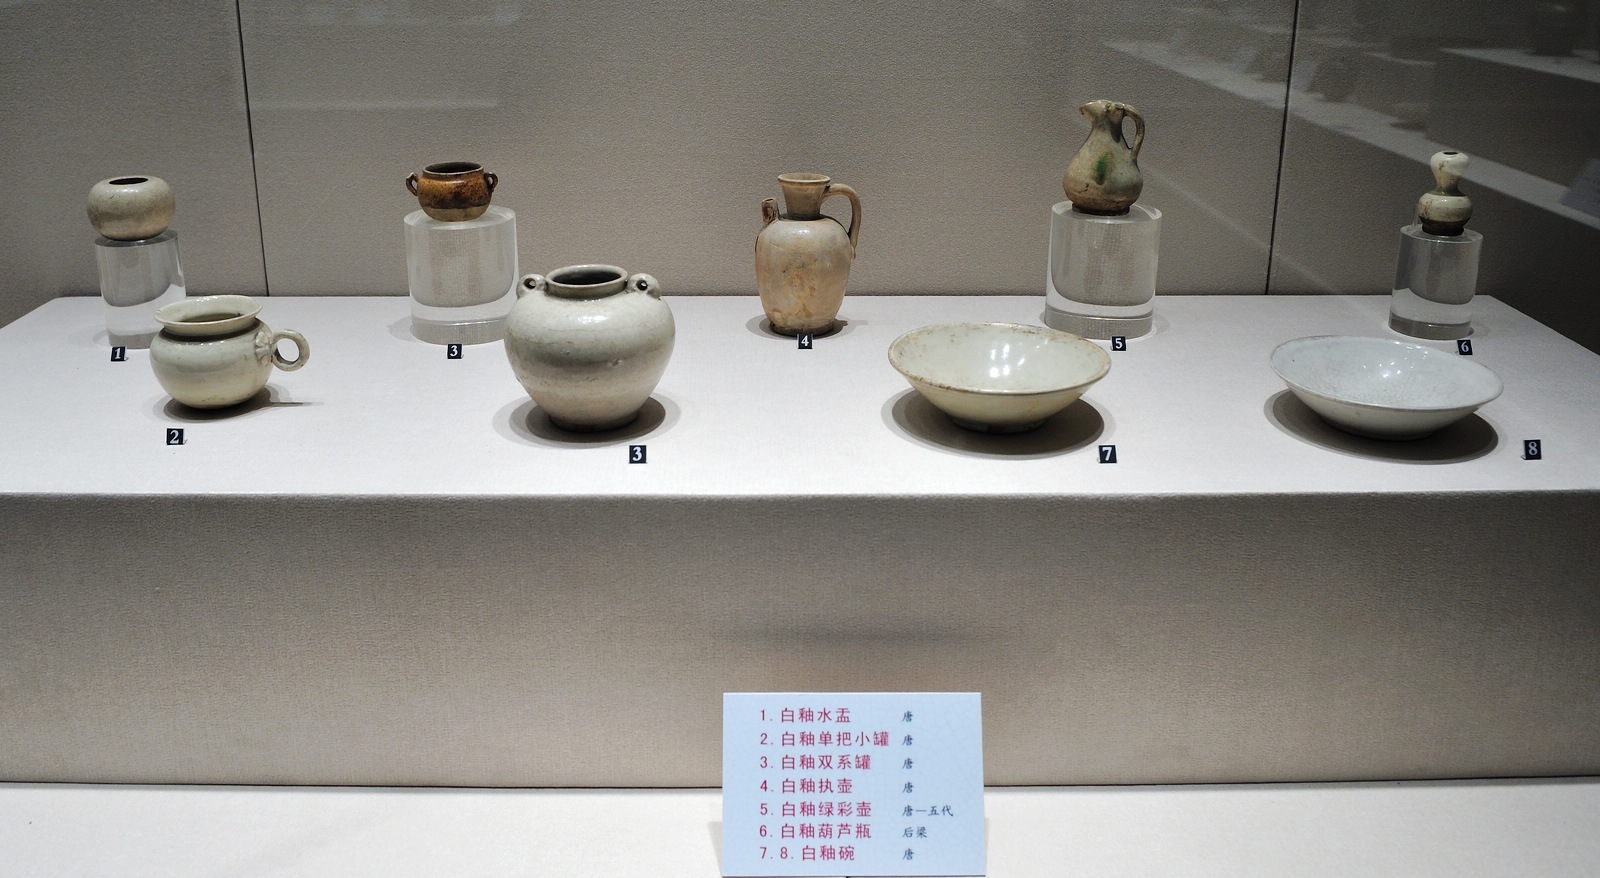 山东博物馆展出瓷器|淄博市传统产业发展中心|山东省陶瓷协会